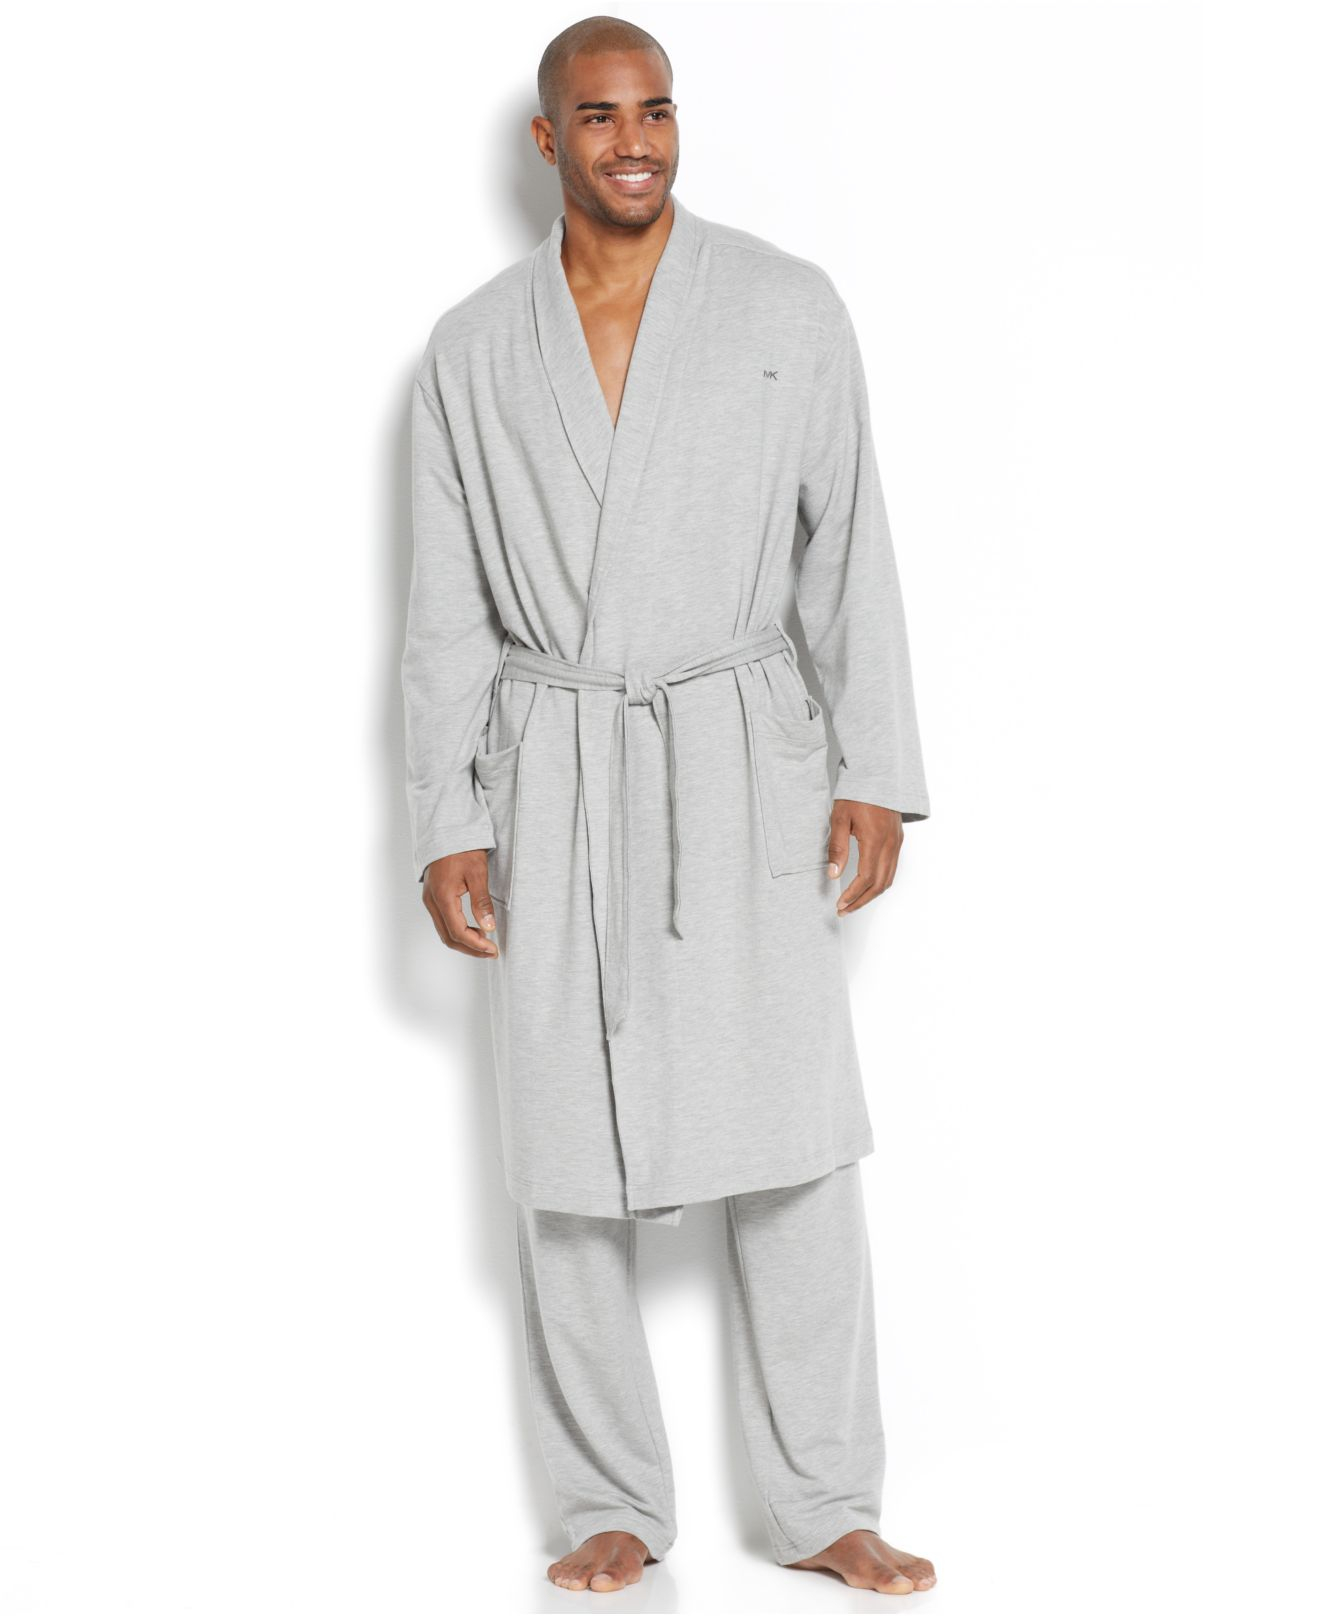 Lyst - Michael kors Men'S Modal French Robe in Gray for Men